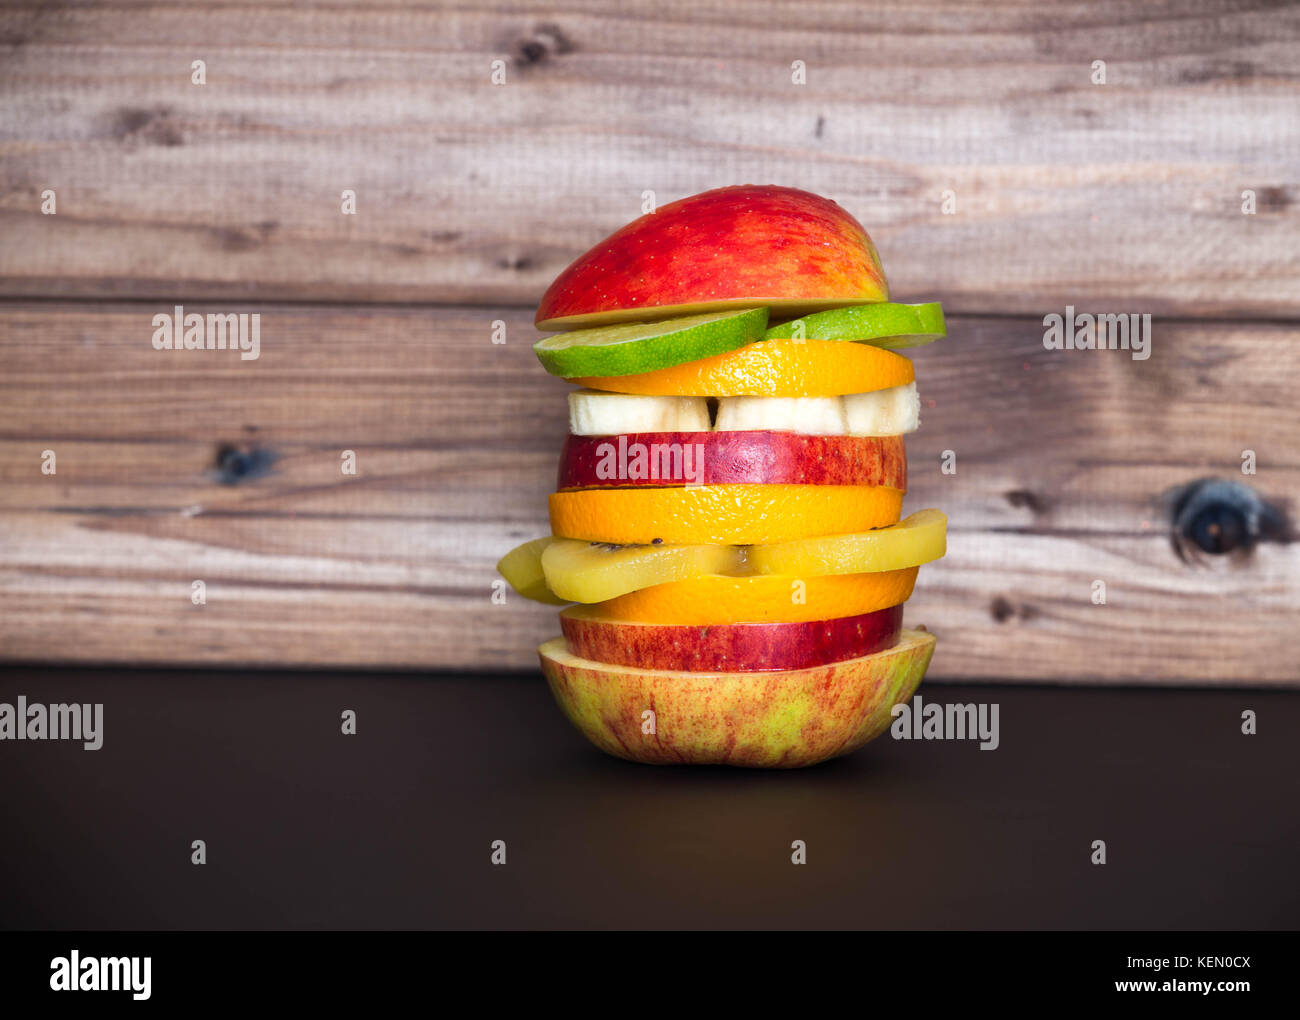 Burger de fruits / concept d'aliments sains Banque D'Images